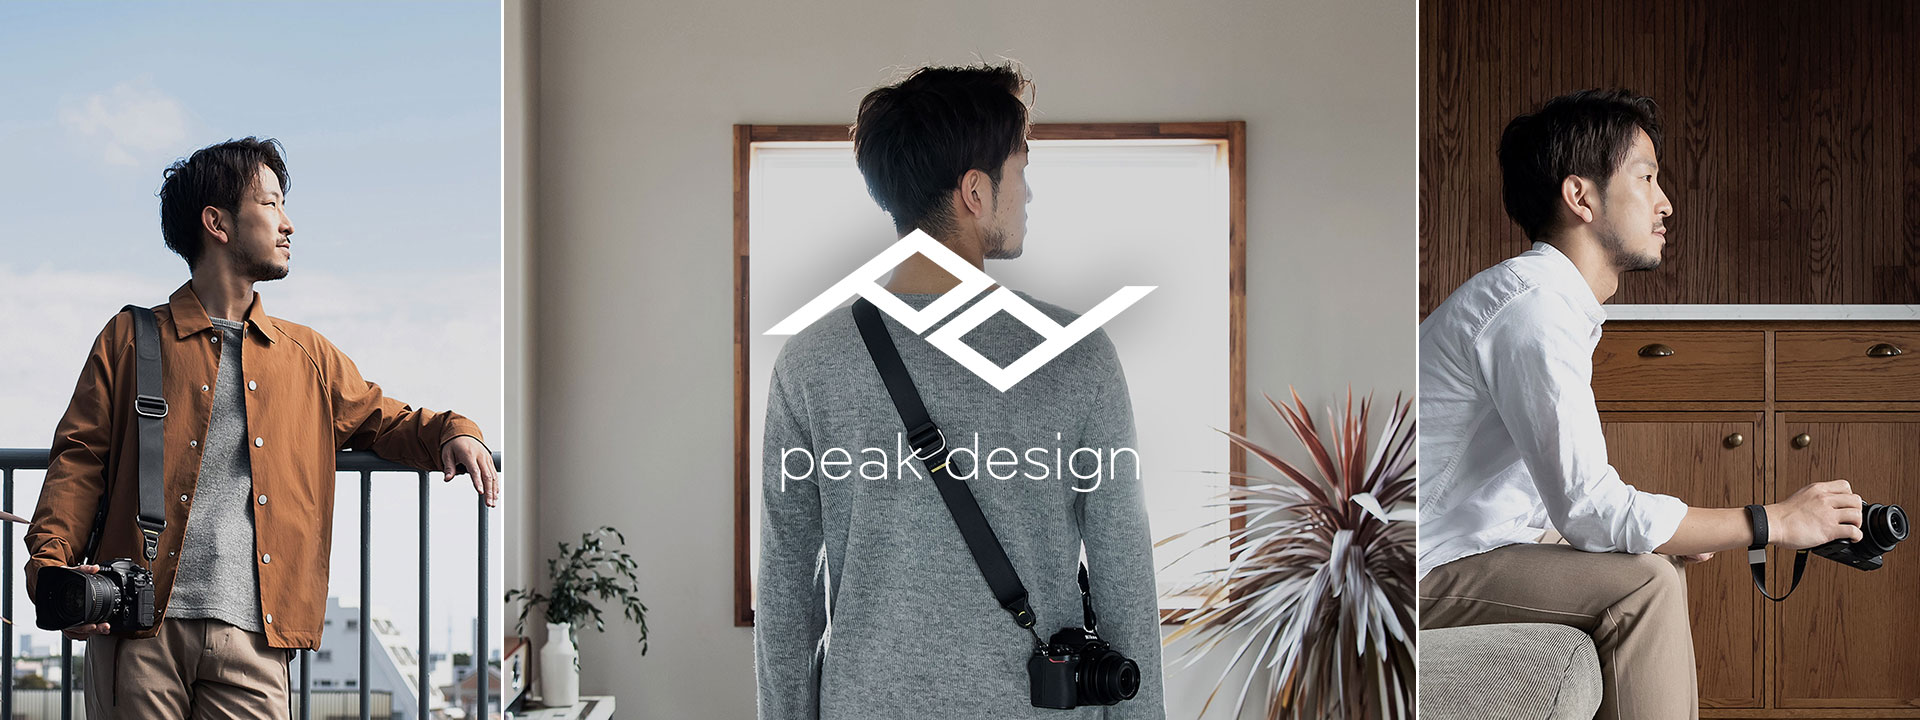 ニコンダイレクト限定 「peak design オリジナル商品」を発売